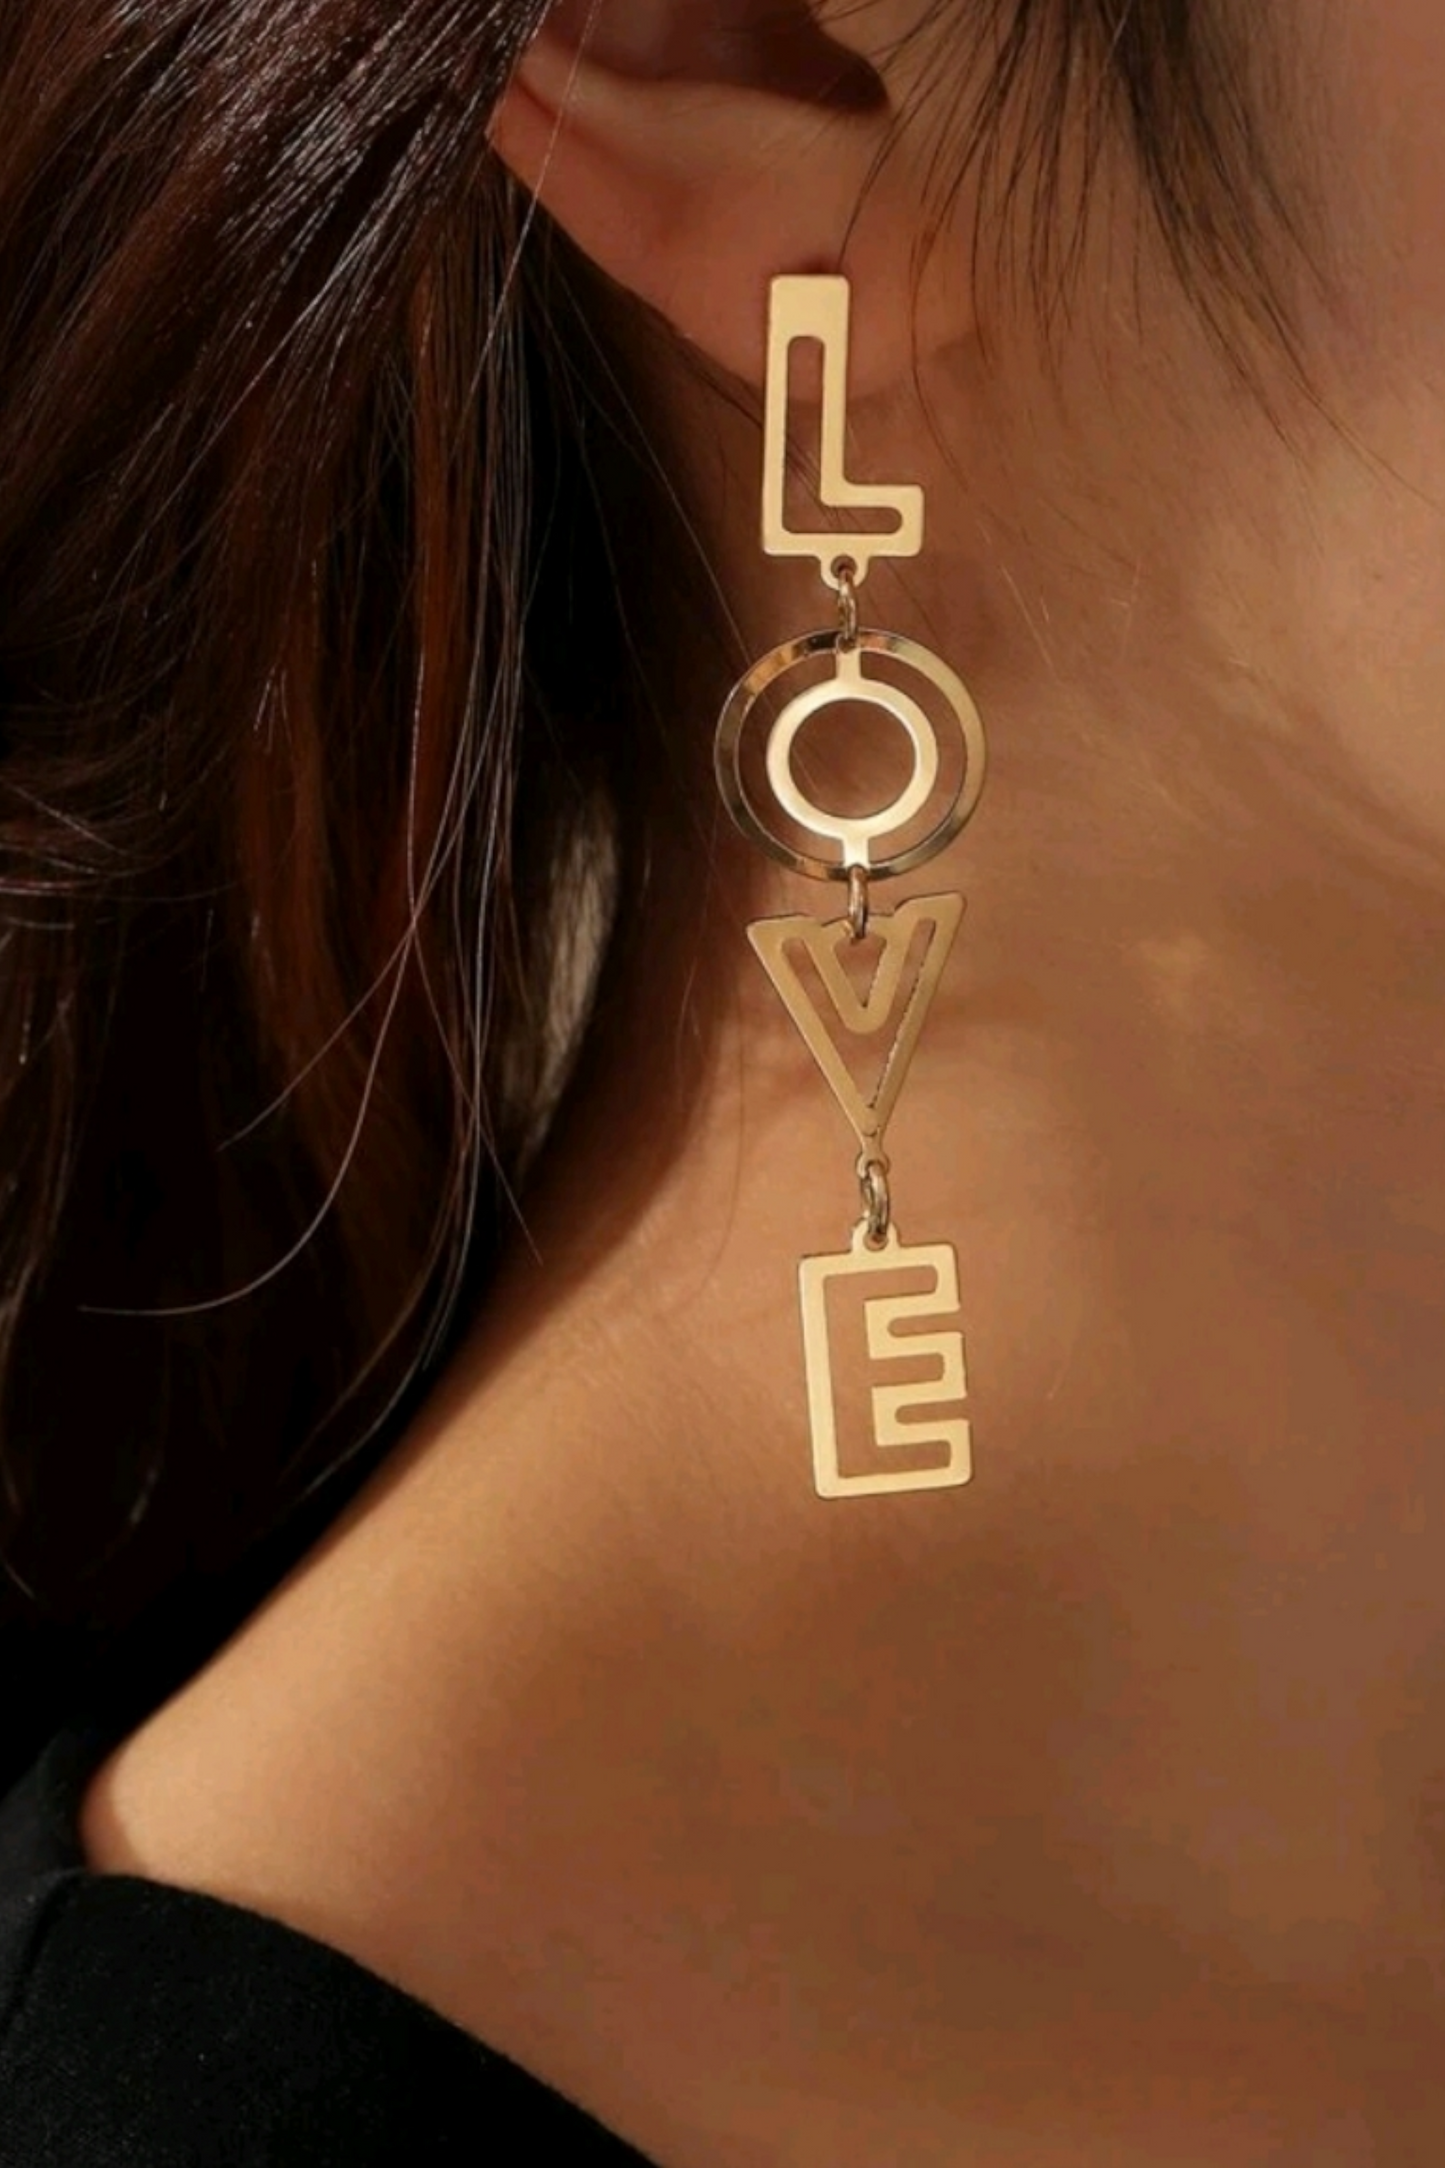 It's all about love earrings